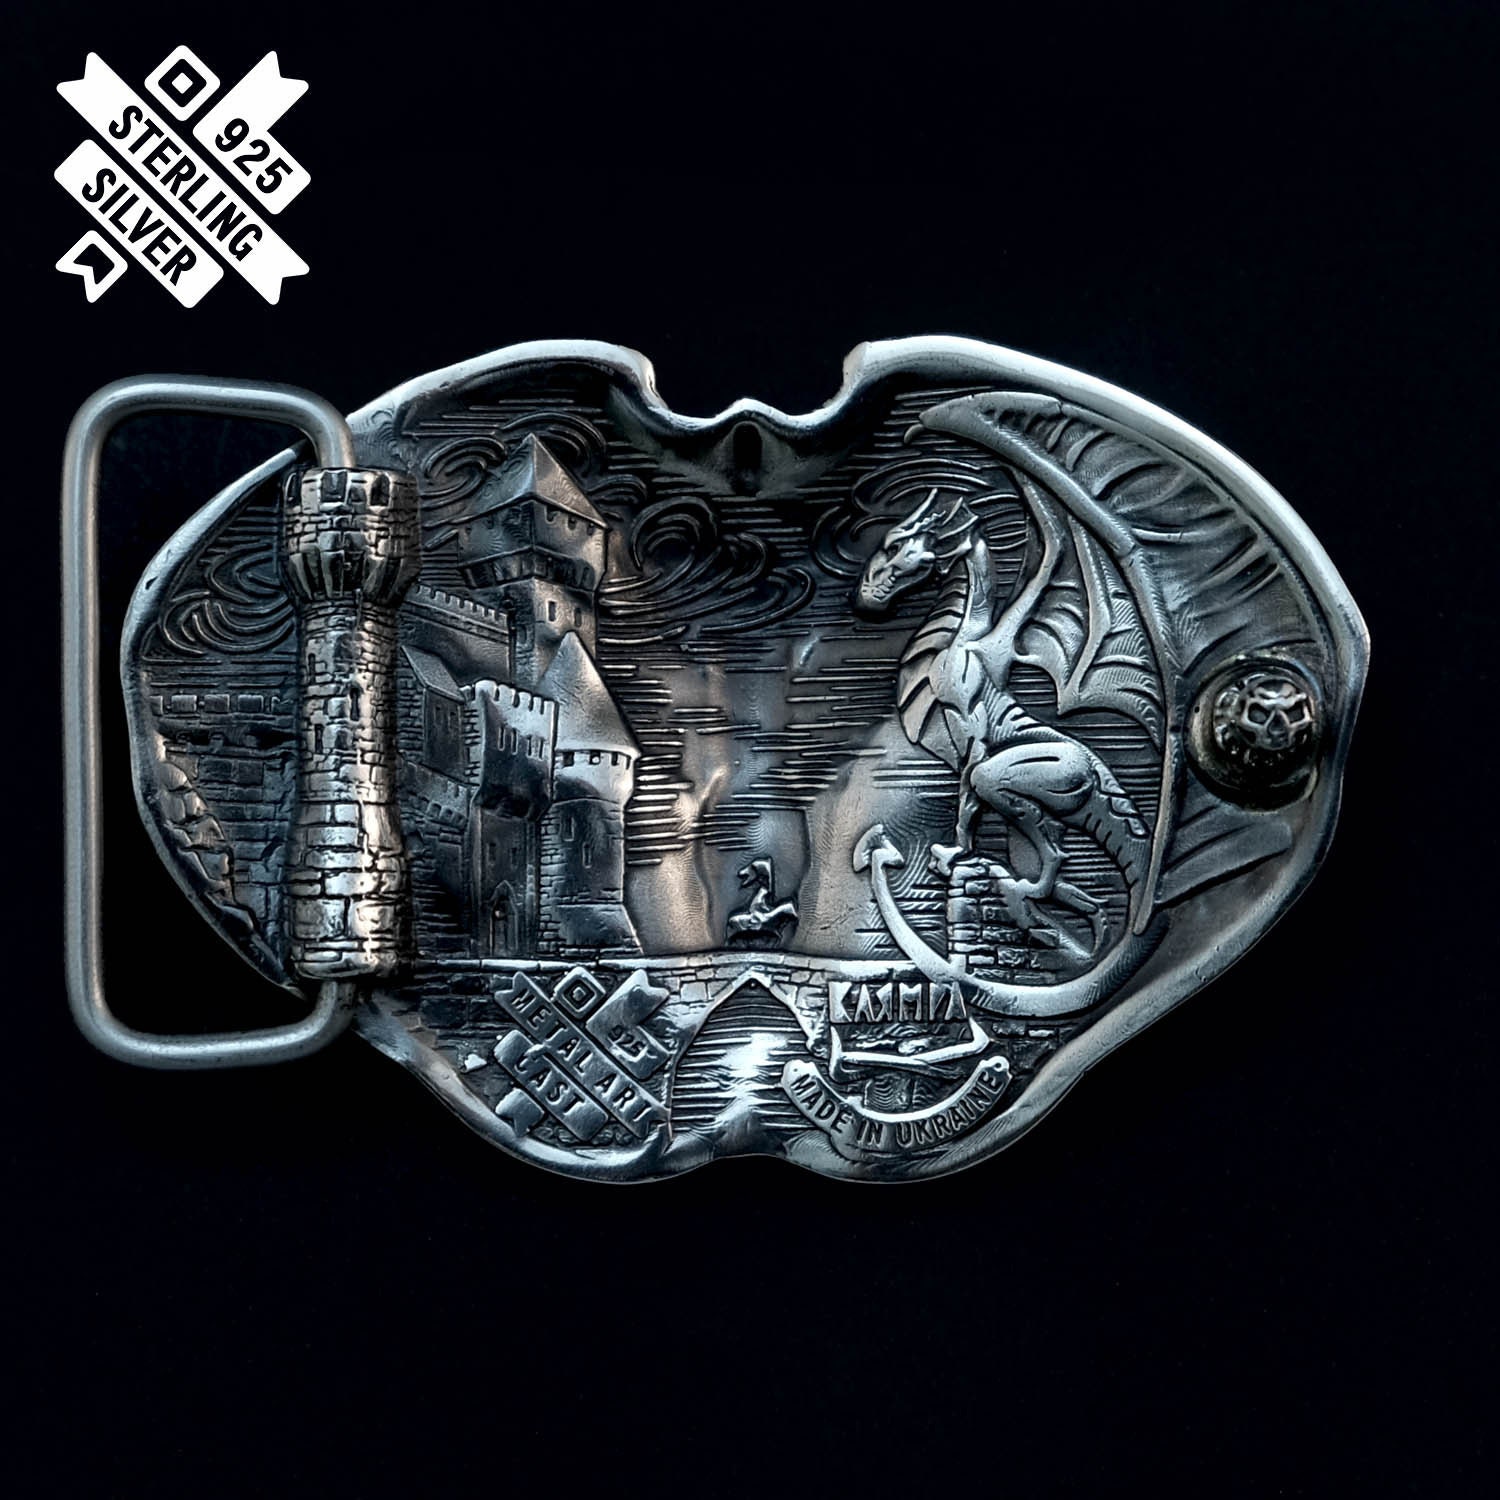 VINTAGE ANTIQUE 19thC RARE Hebilla de cinturón de dragón de plata tibetano chino Accesorios Cinturones y tirantes Hebillas para cinturón 